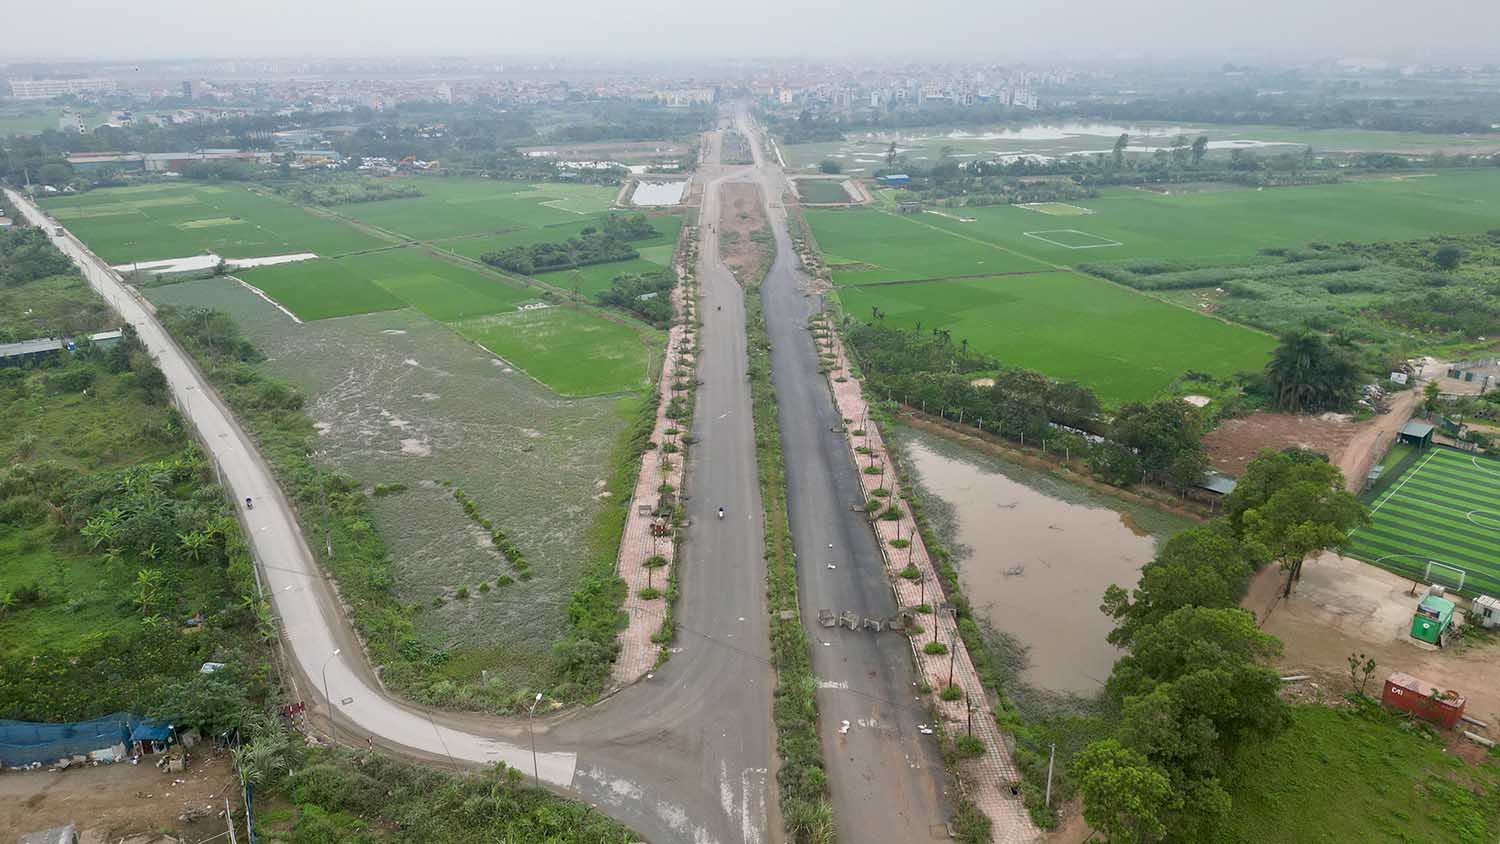 Dự án xây dựng đường Lại Yên - Vân Canh (đoạn từ đường liên khu vực 2 đến đường Vành đai 3,5) là một trong những dự án giao thông trọng điểm của TP Hà Nội giao UBND huyện Hoài Đức làm chủ đầu tư.